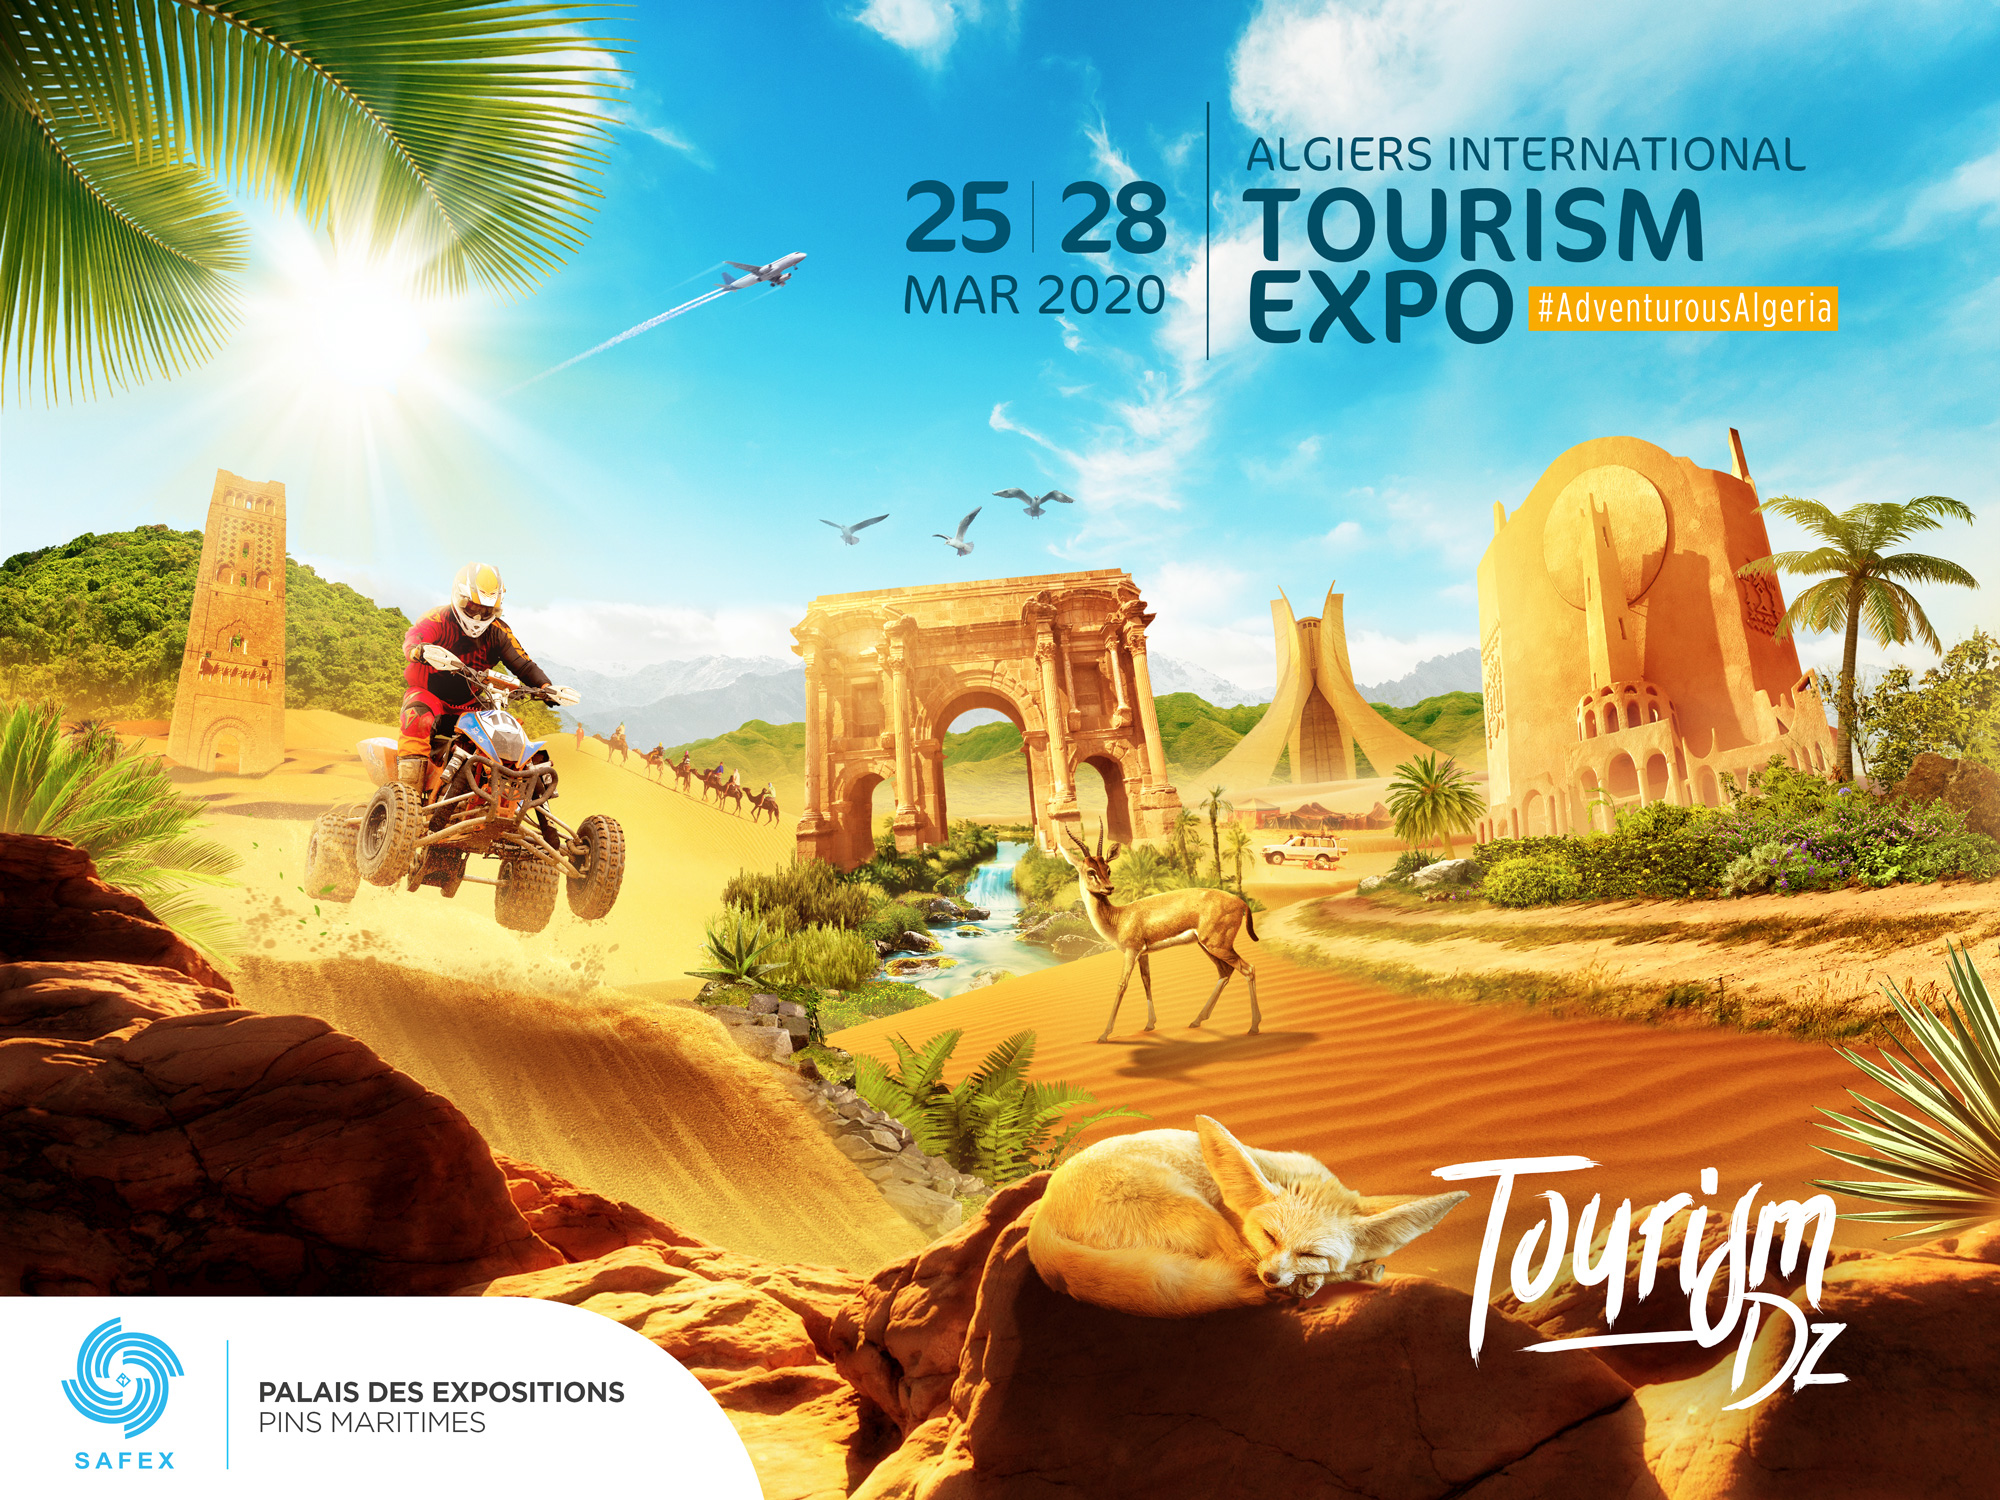 Tourism Expo